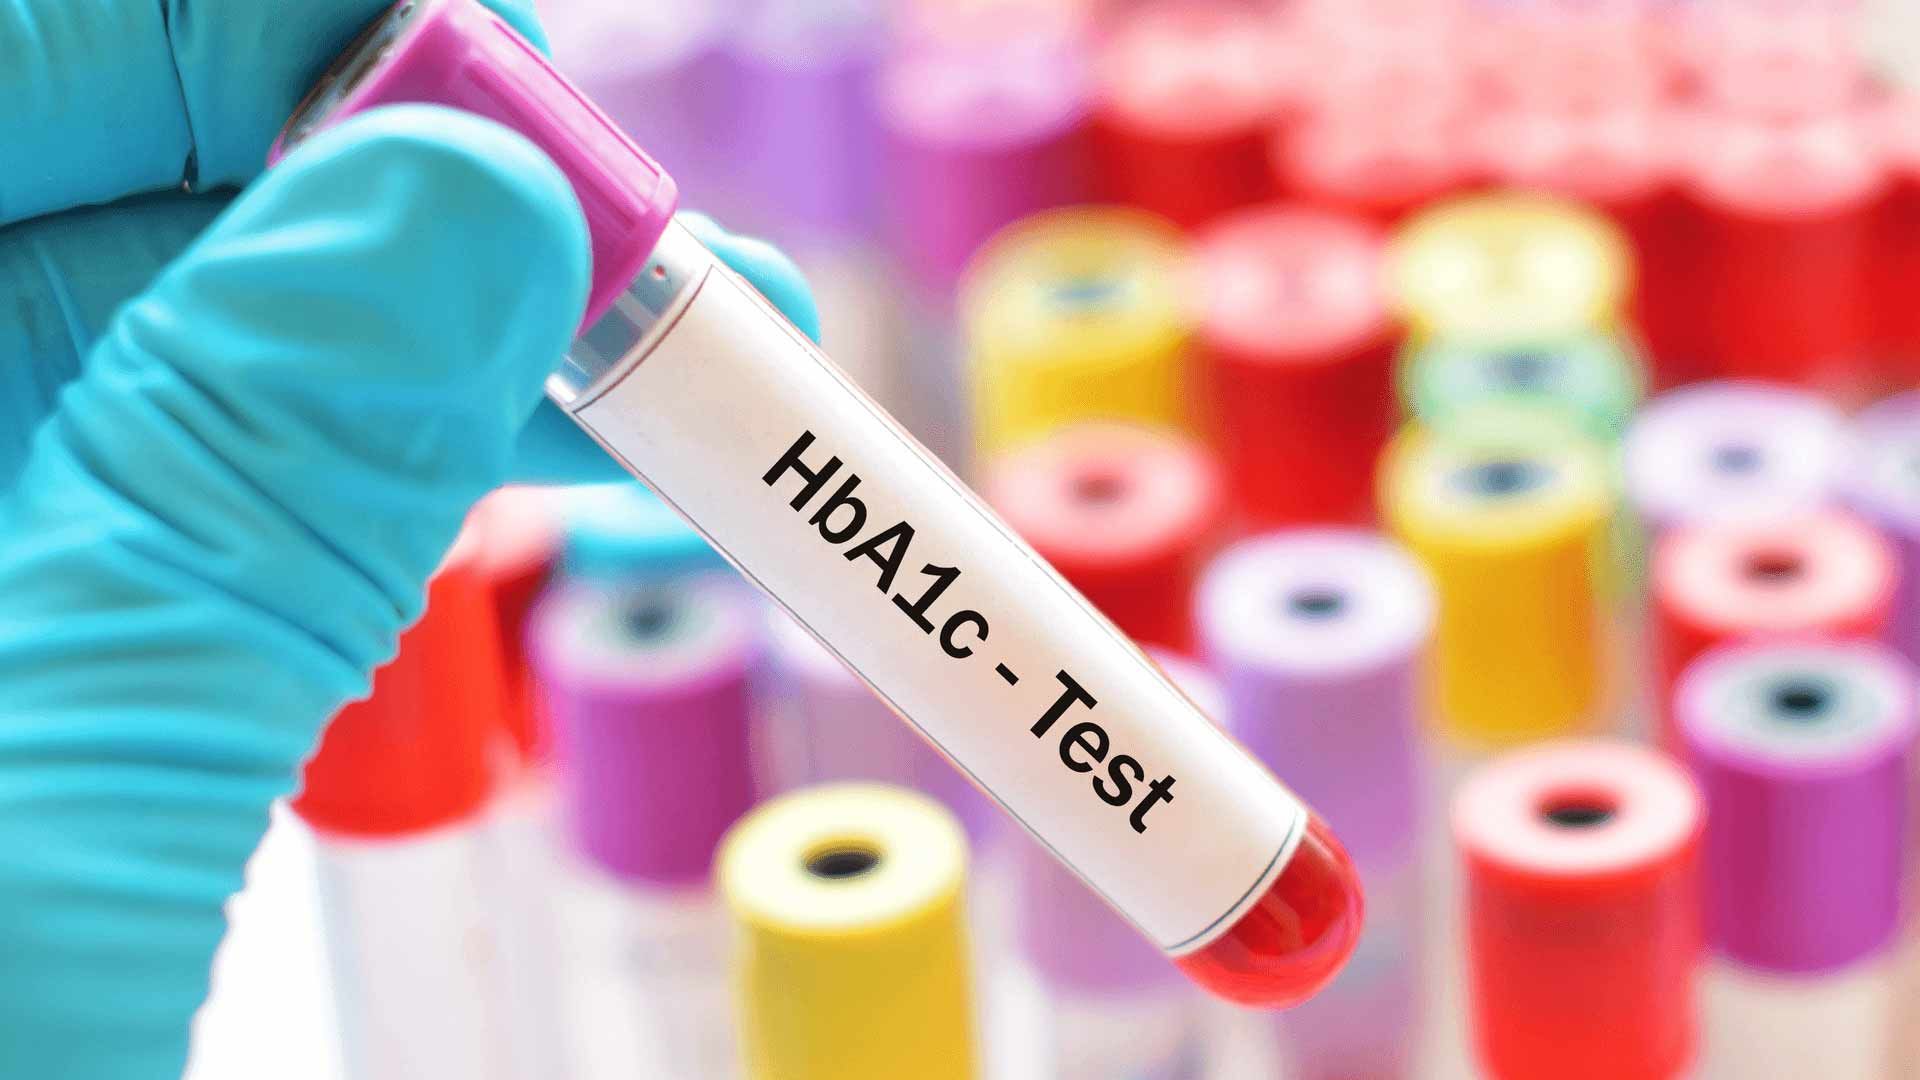  آزمایش هموگلوبین / hba1c test